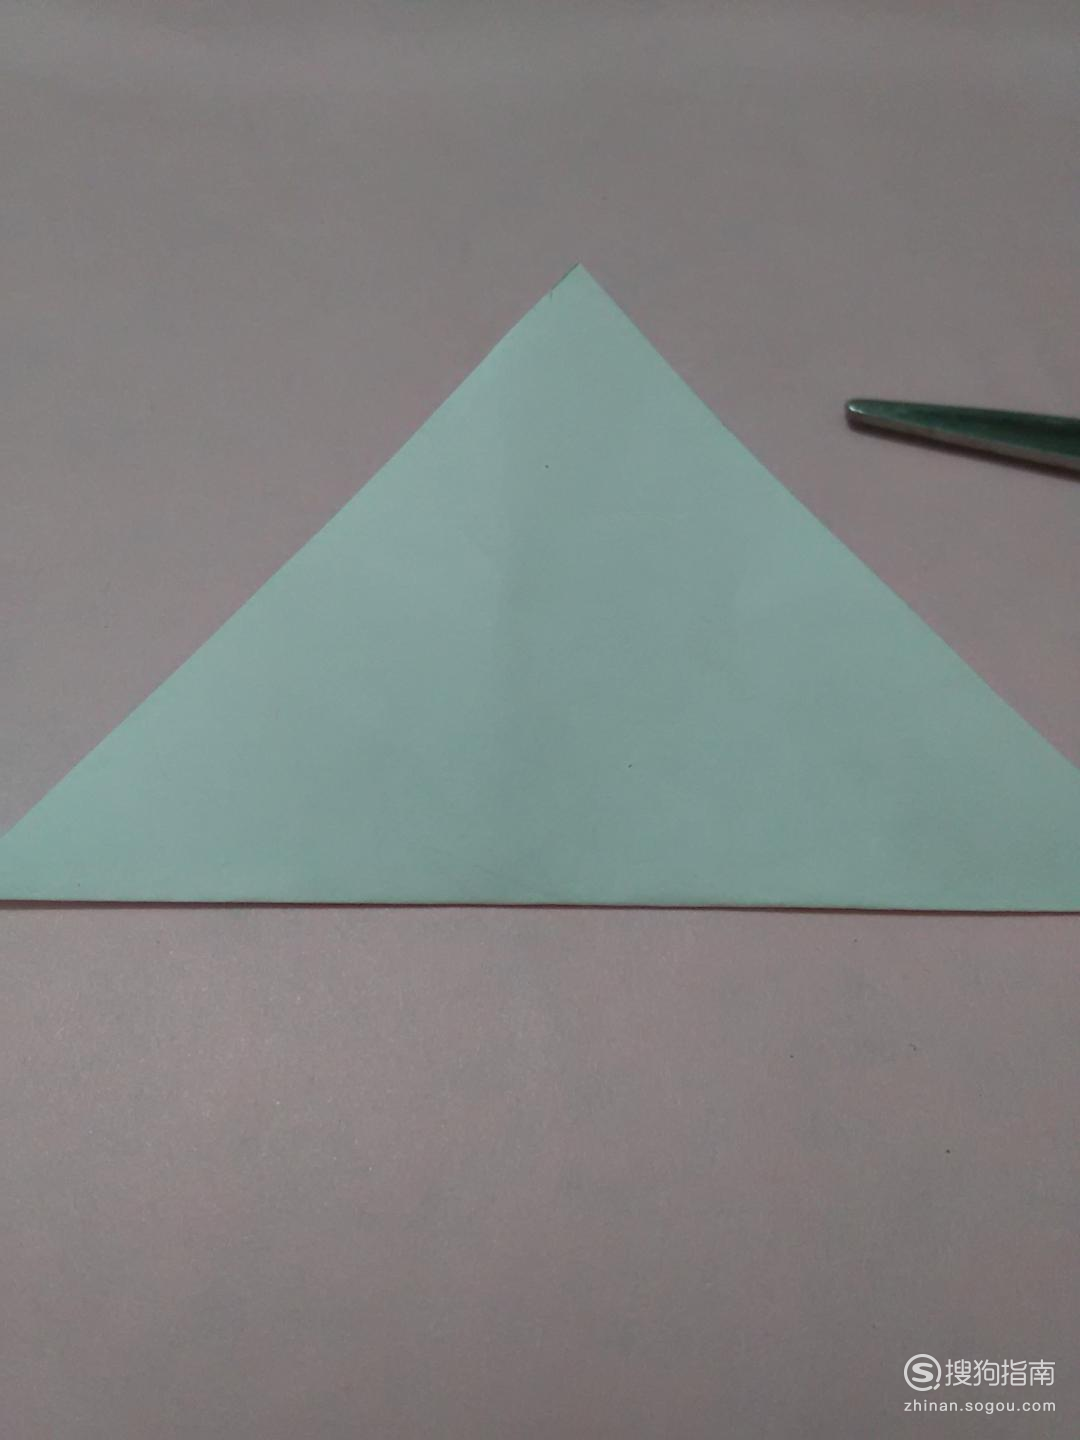 准备一张正方形的纸和一把剪刀,先把正方形对折成三角形.